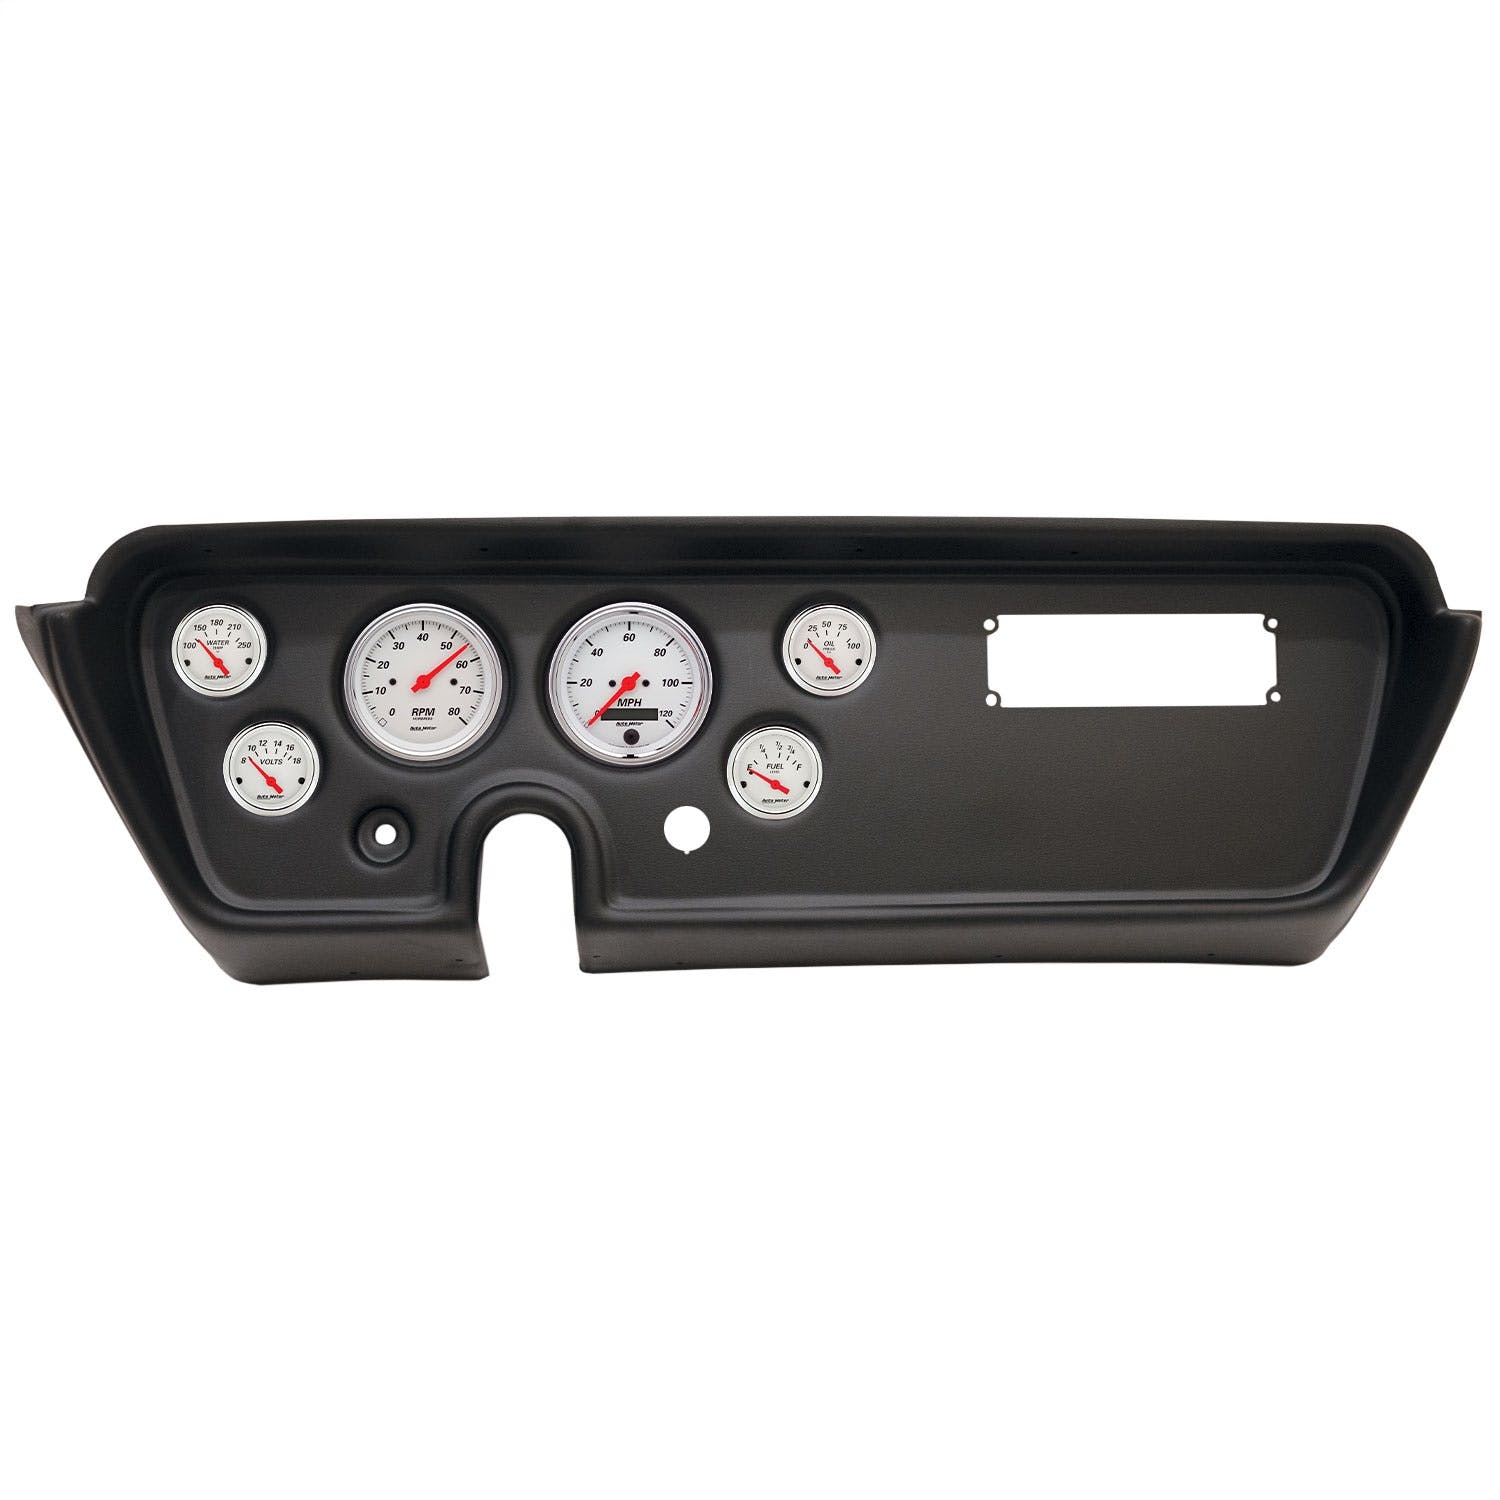 AutoMeter Products 2113-03 6 Gauge Direct-Fit Dash Kit, Pontiac GTO/Lemans 67, Arctic White